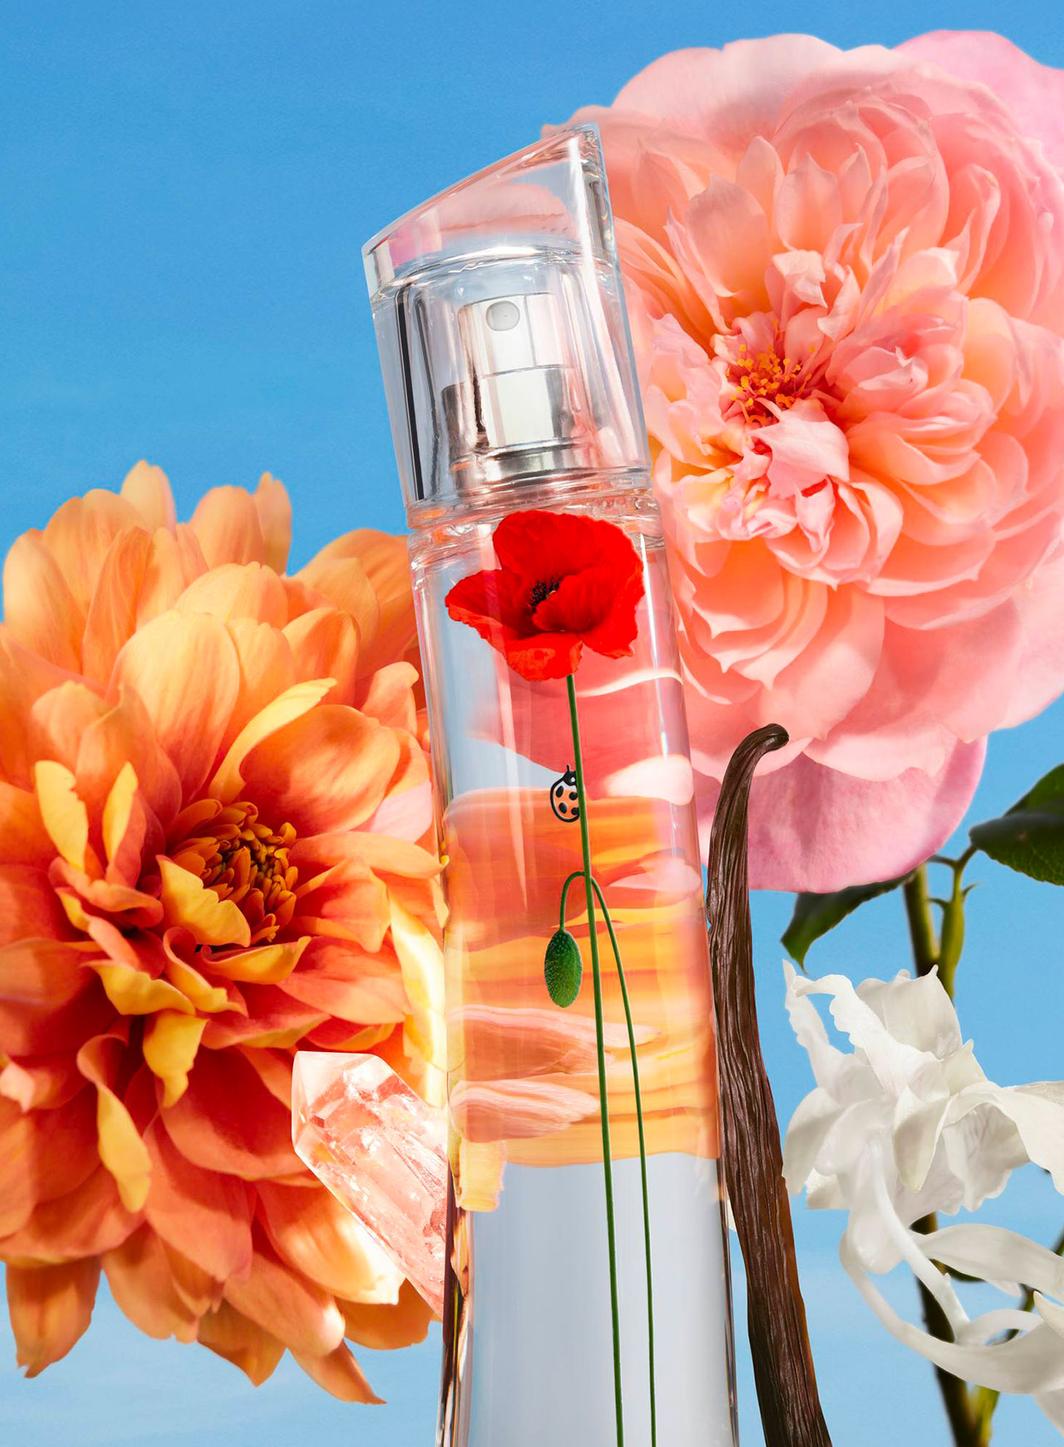 Kenzo Parfums revisite sa fragrance Flower avec des fleurs parisiennes